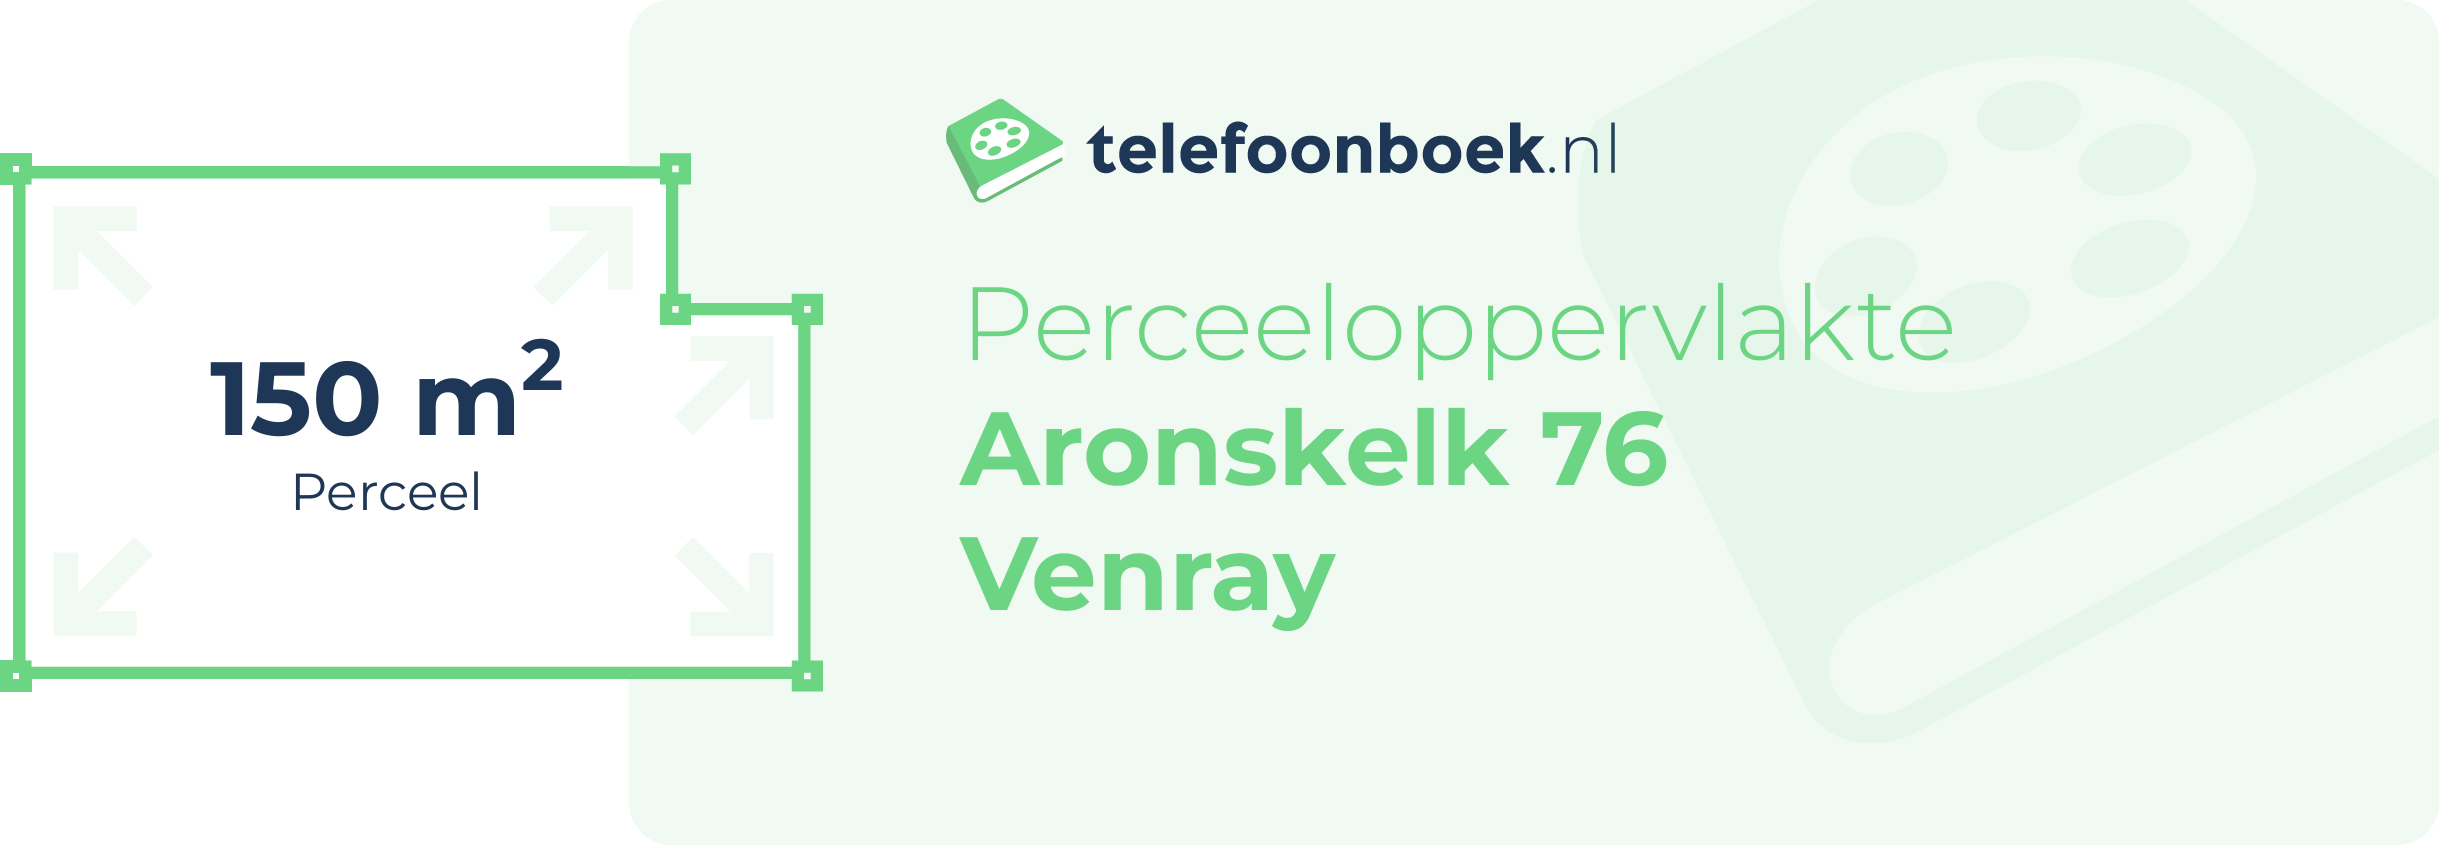 Perceeloppervlakte Aronskelk 76 Venray